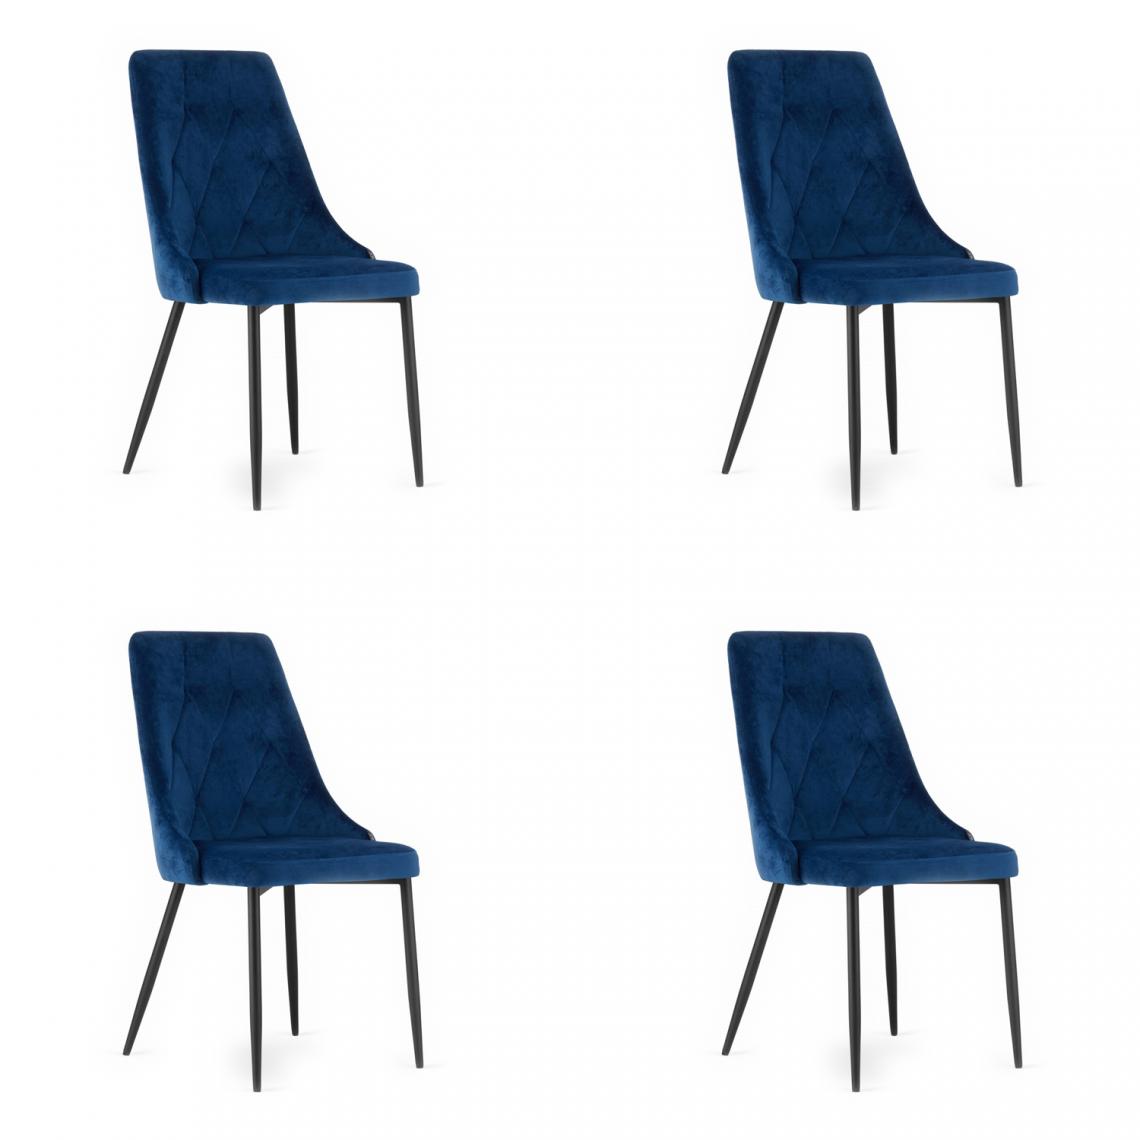 Hucoco - IMOLET - Lot de 4 chaises en velours salon/salle à manger/bureau - 93.5x61x48.5 cm - Chaise de salle à manger - Bleu - Chaises